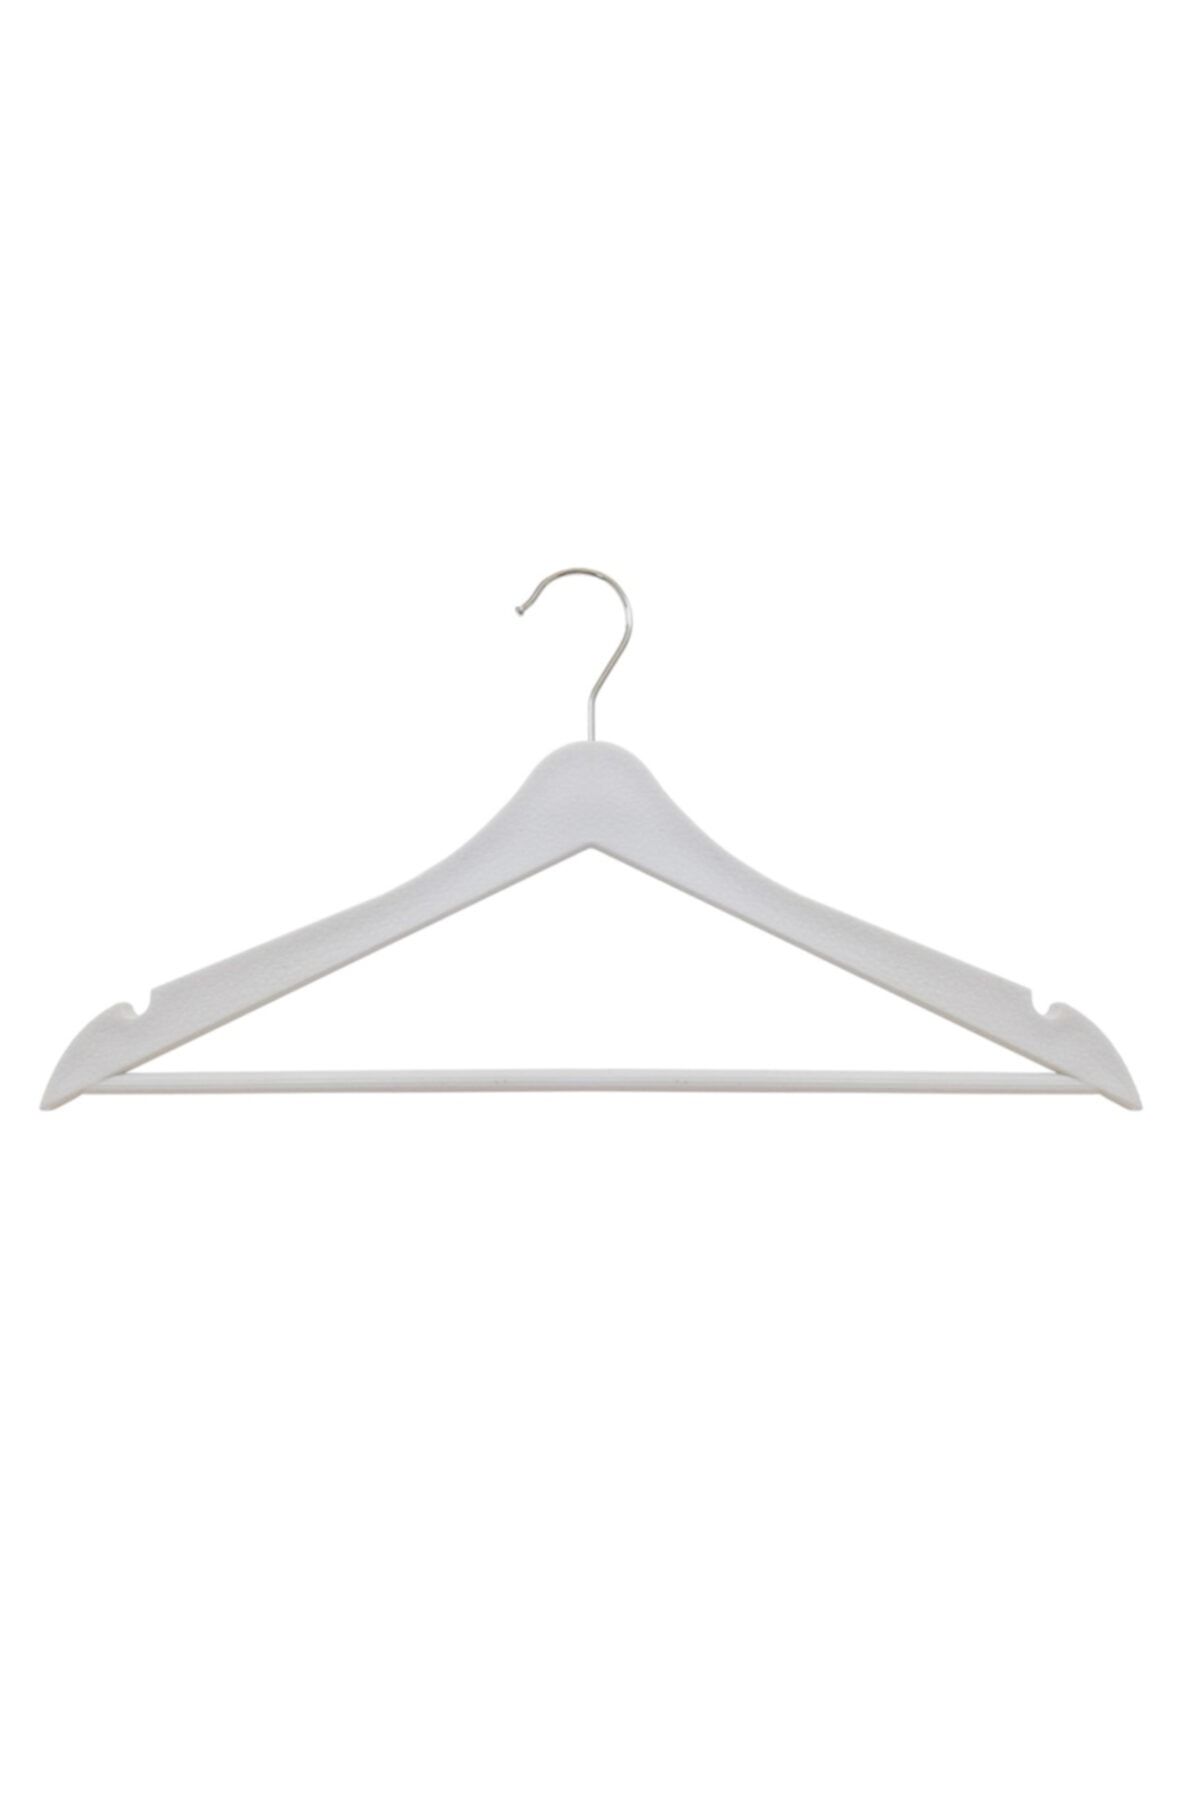 bimbambom Ahşap Görünümlü Elbise Askısı 12 Adet Plastik Askı, Beyaz